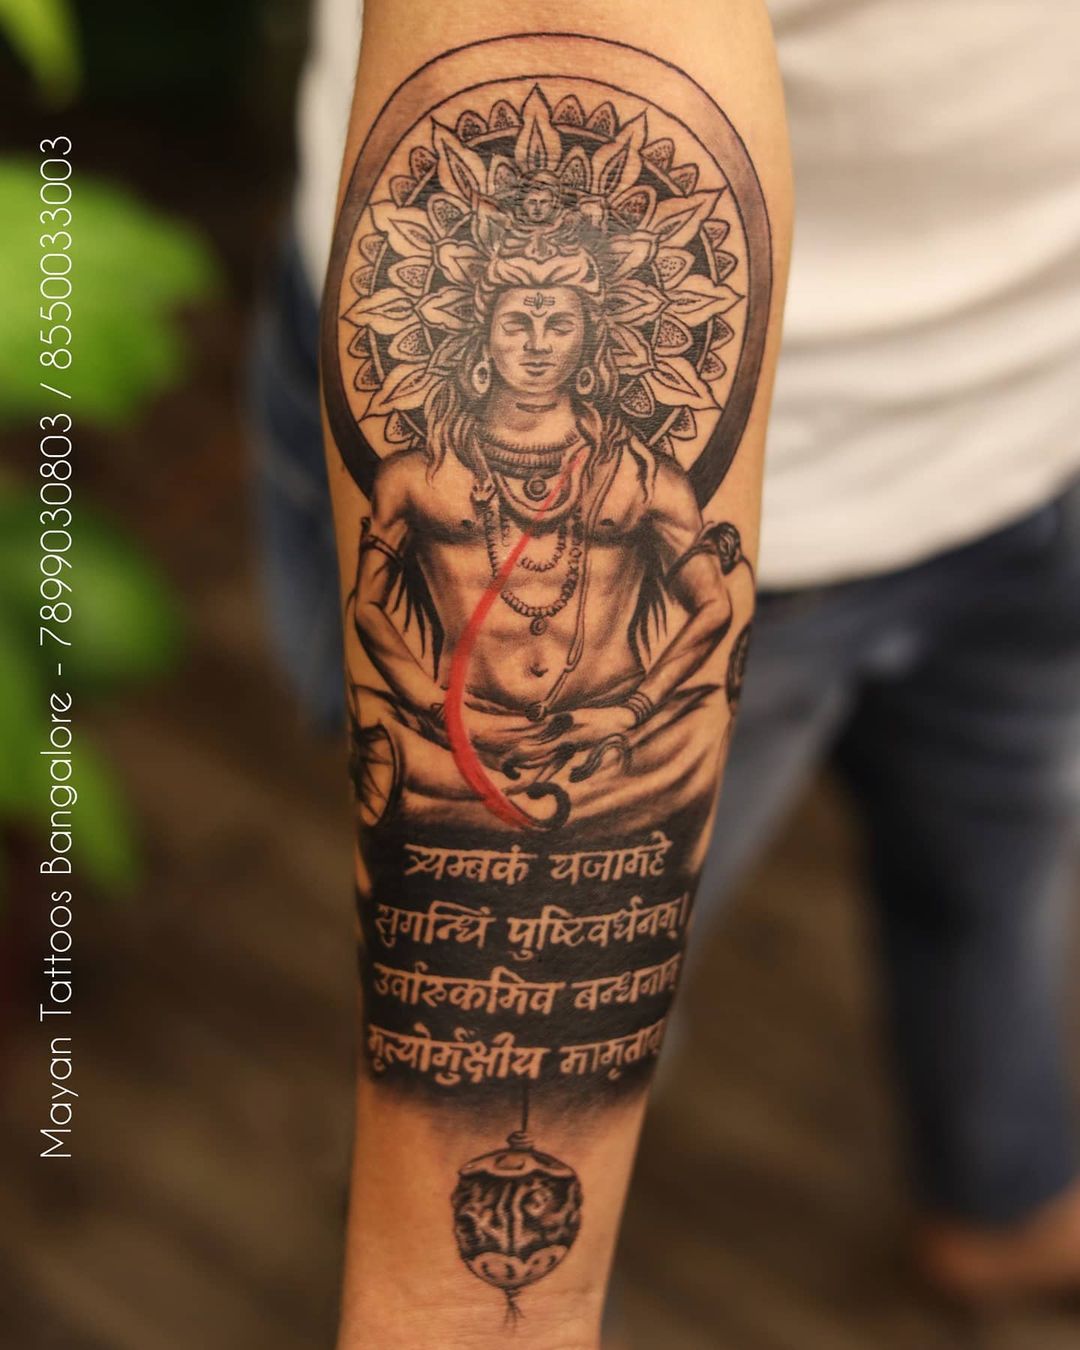 samurai tattoo mehsana on Twitter Mahadev band tattoo Mahadev band tattoo  design Mahadev tattoo Shiva tattoo Bholenath tattoo  httpstcoKJf3LRmNZC  Twitter